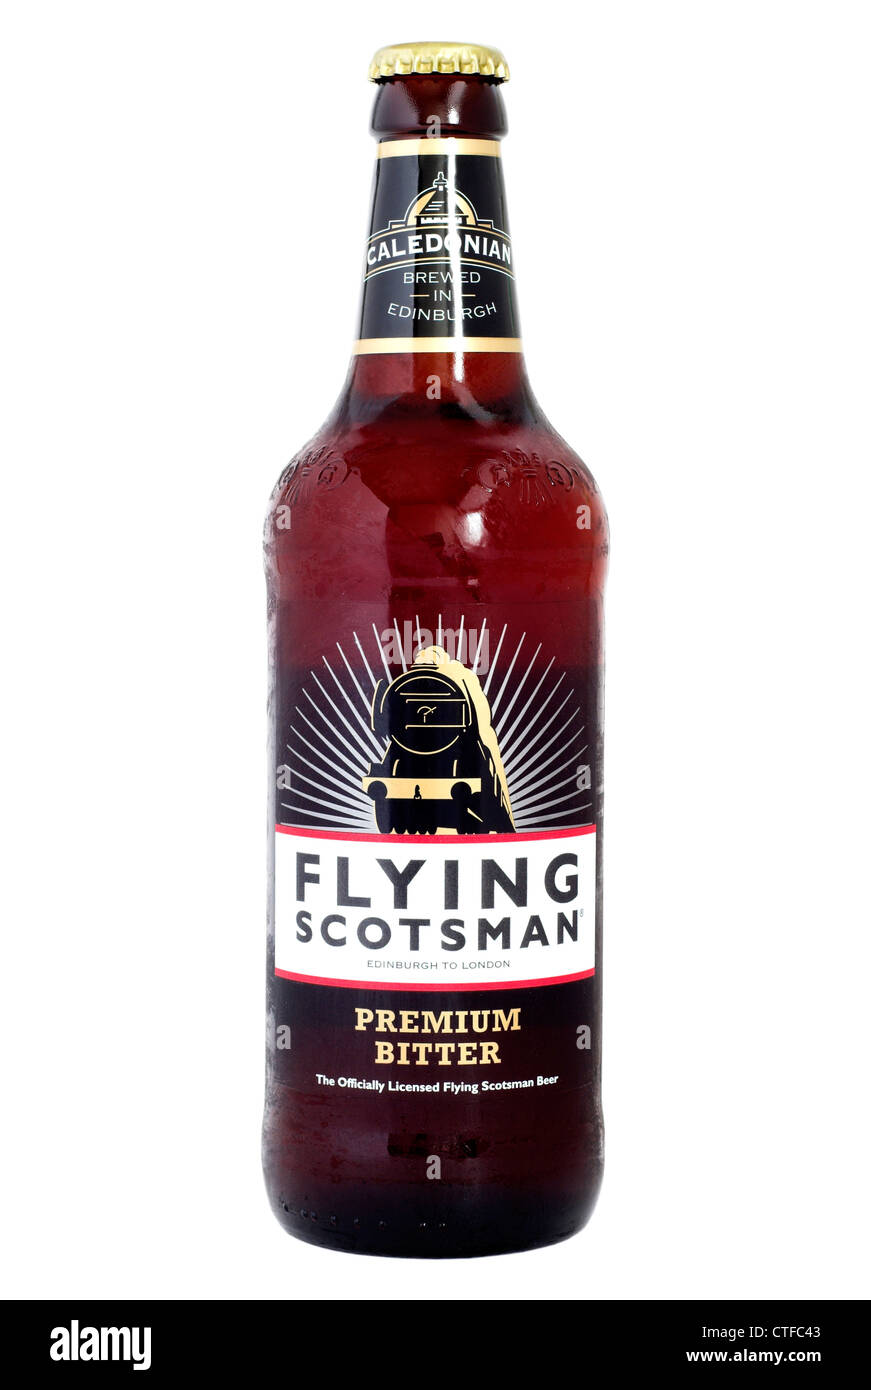 Caledonian (Heineken UK) Flying Scotsman bottled beer - current @ 2012. Stock Photo